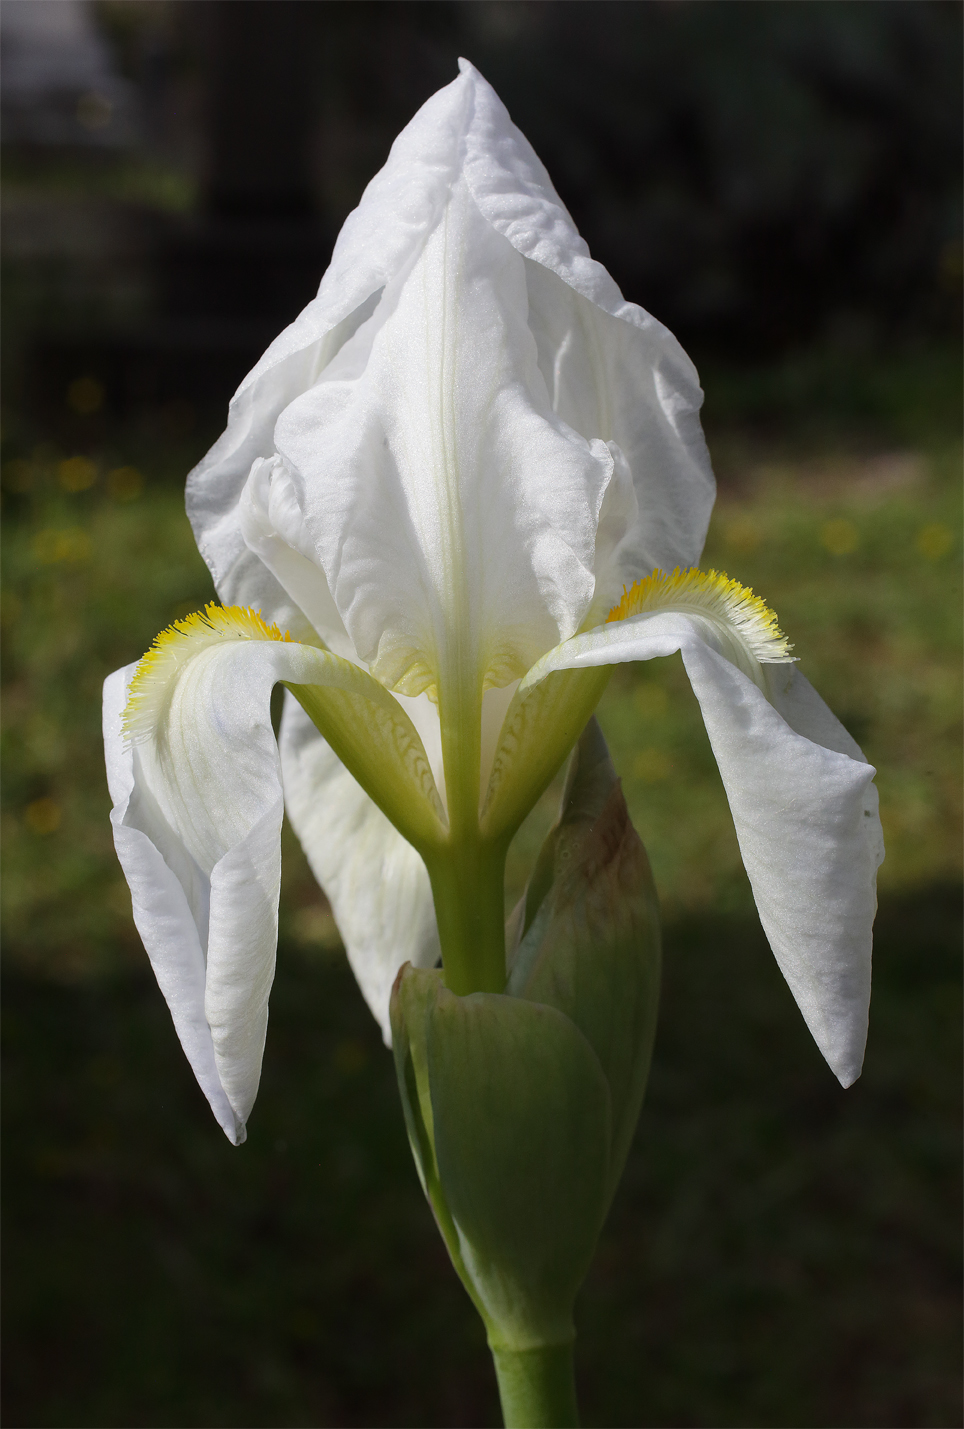 fiore di Iris florentina aperto da poco con le lacinie ancora appuntite